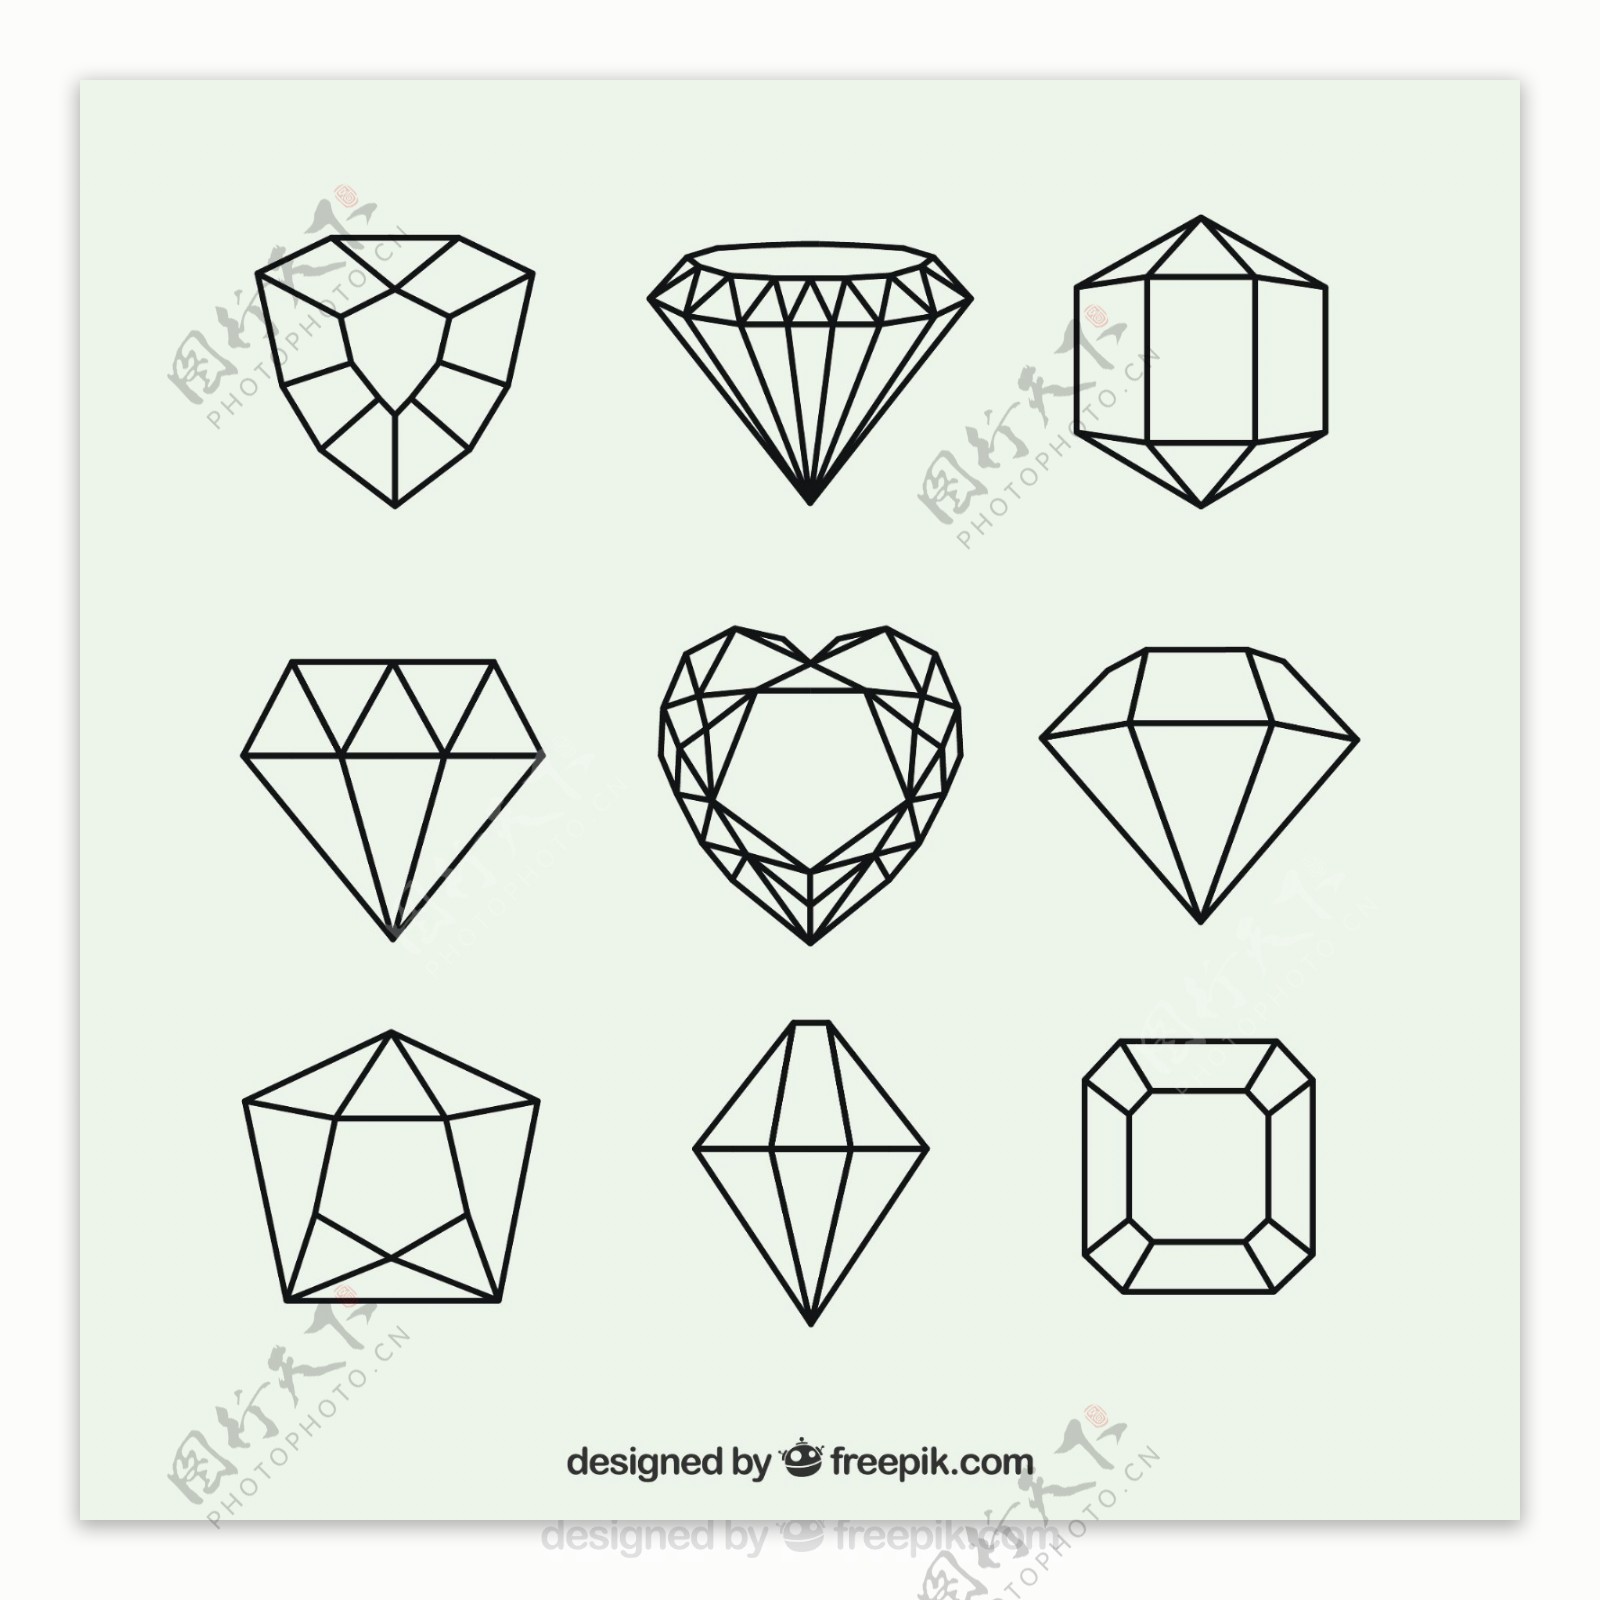 几何钻石组合